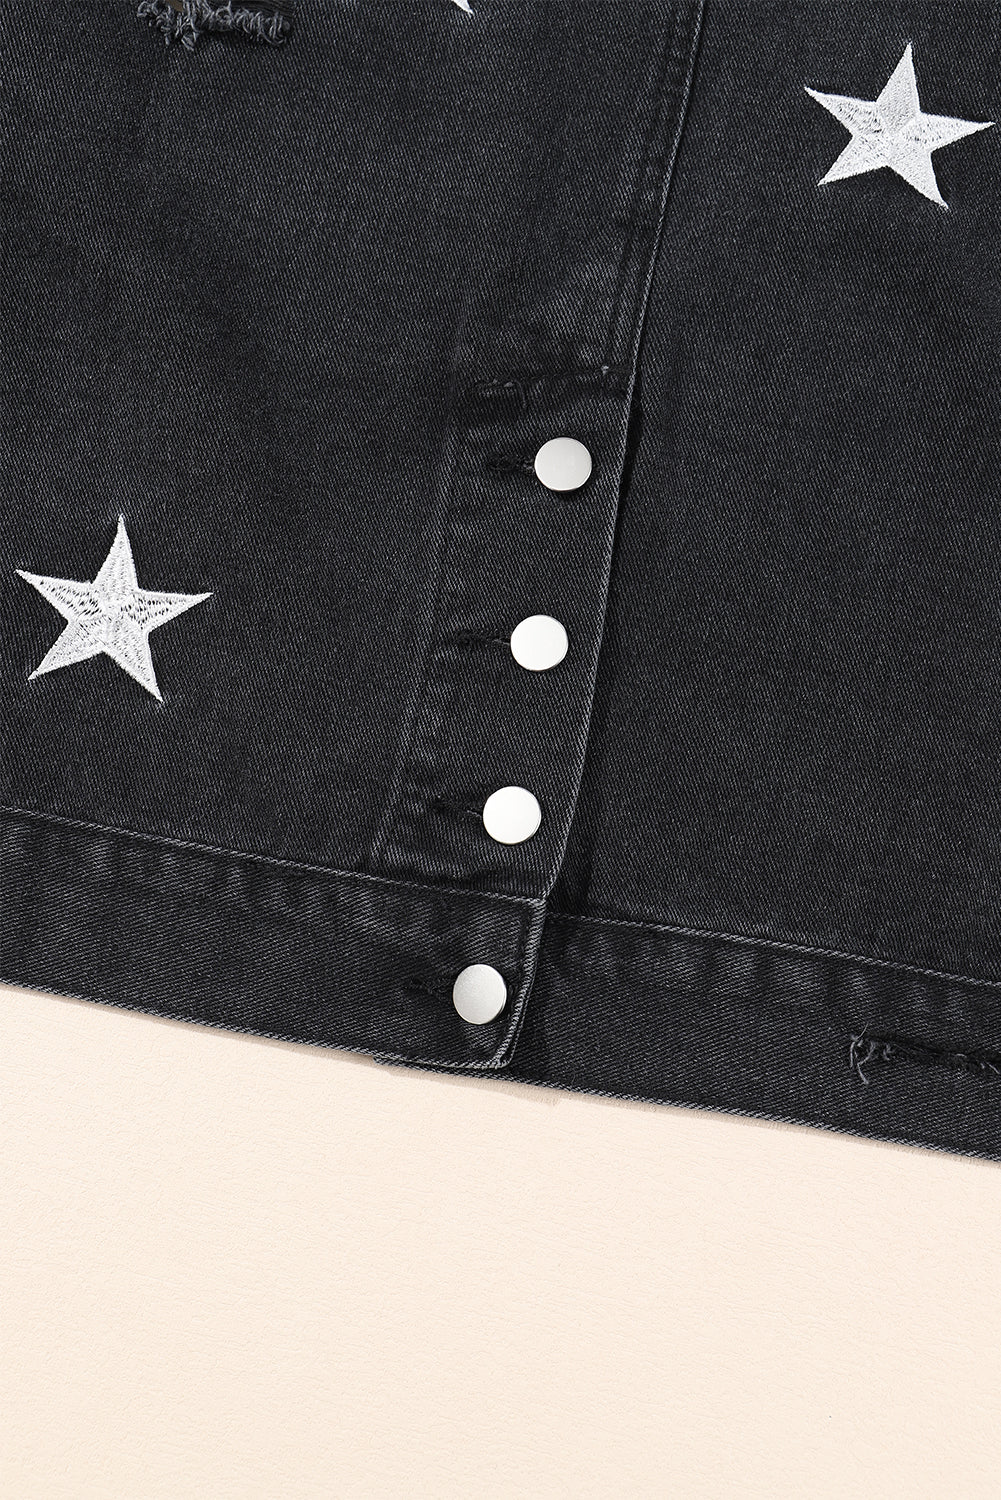 Schwarze verkürzte Jeansjacke mit Perlen und Sternen im Distressed-Look